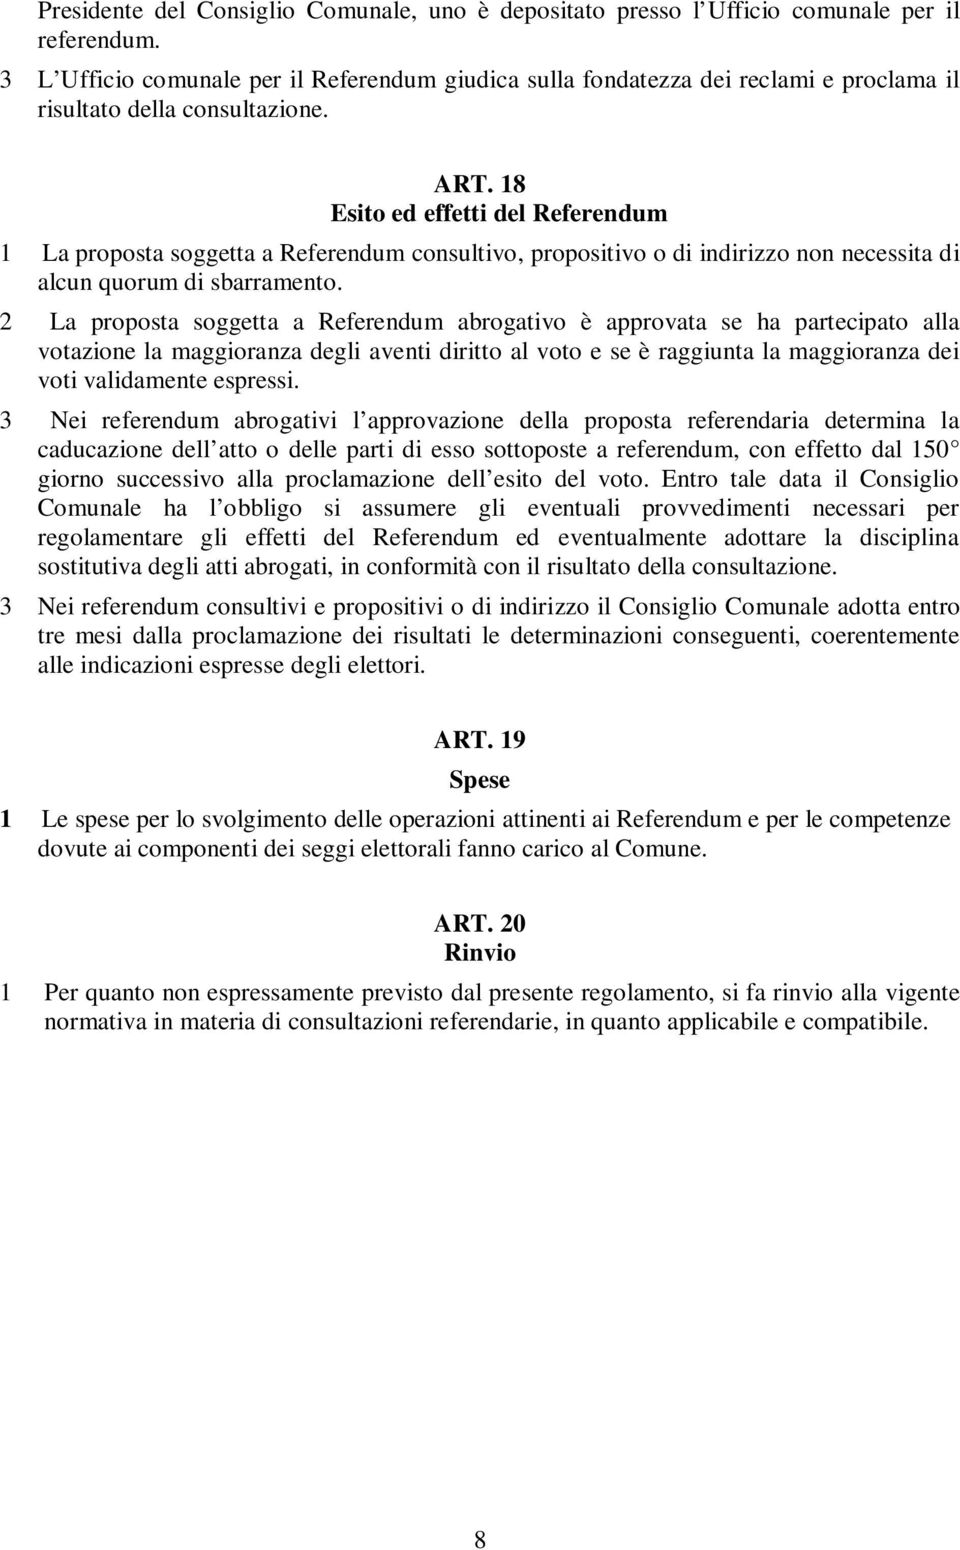 18 Esito ed effetti del Referendum 1 La proposta soggetta a Referendum consultivo, propositivo o di indirizzo non necessita di alcun quorum di sbarramento.